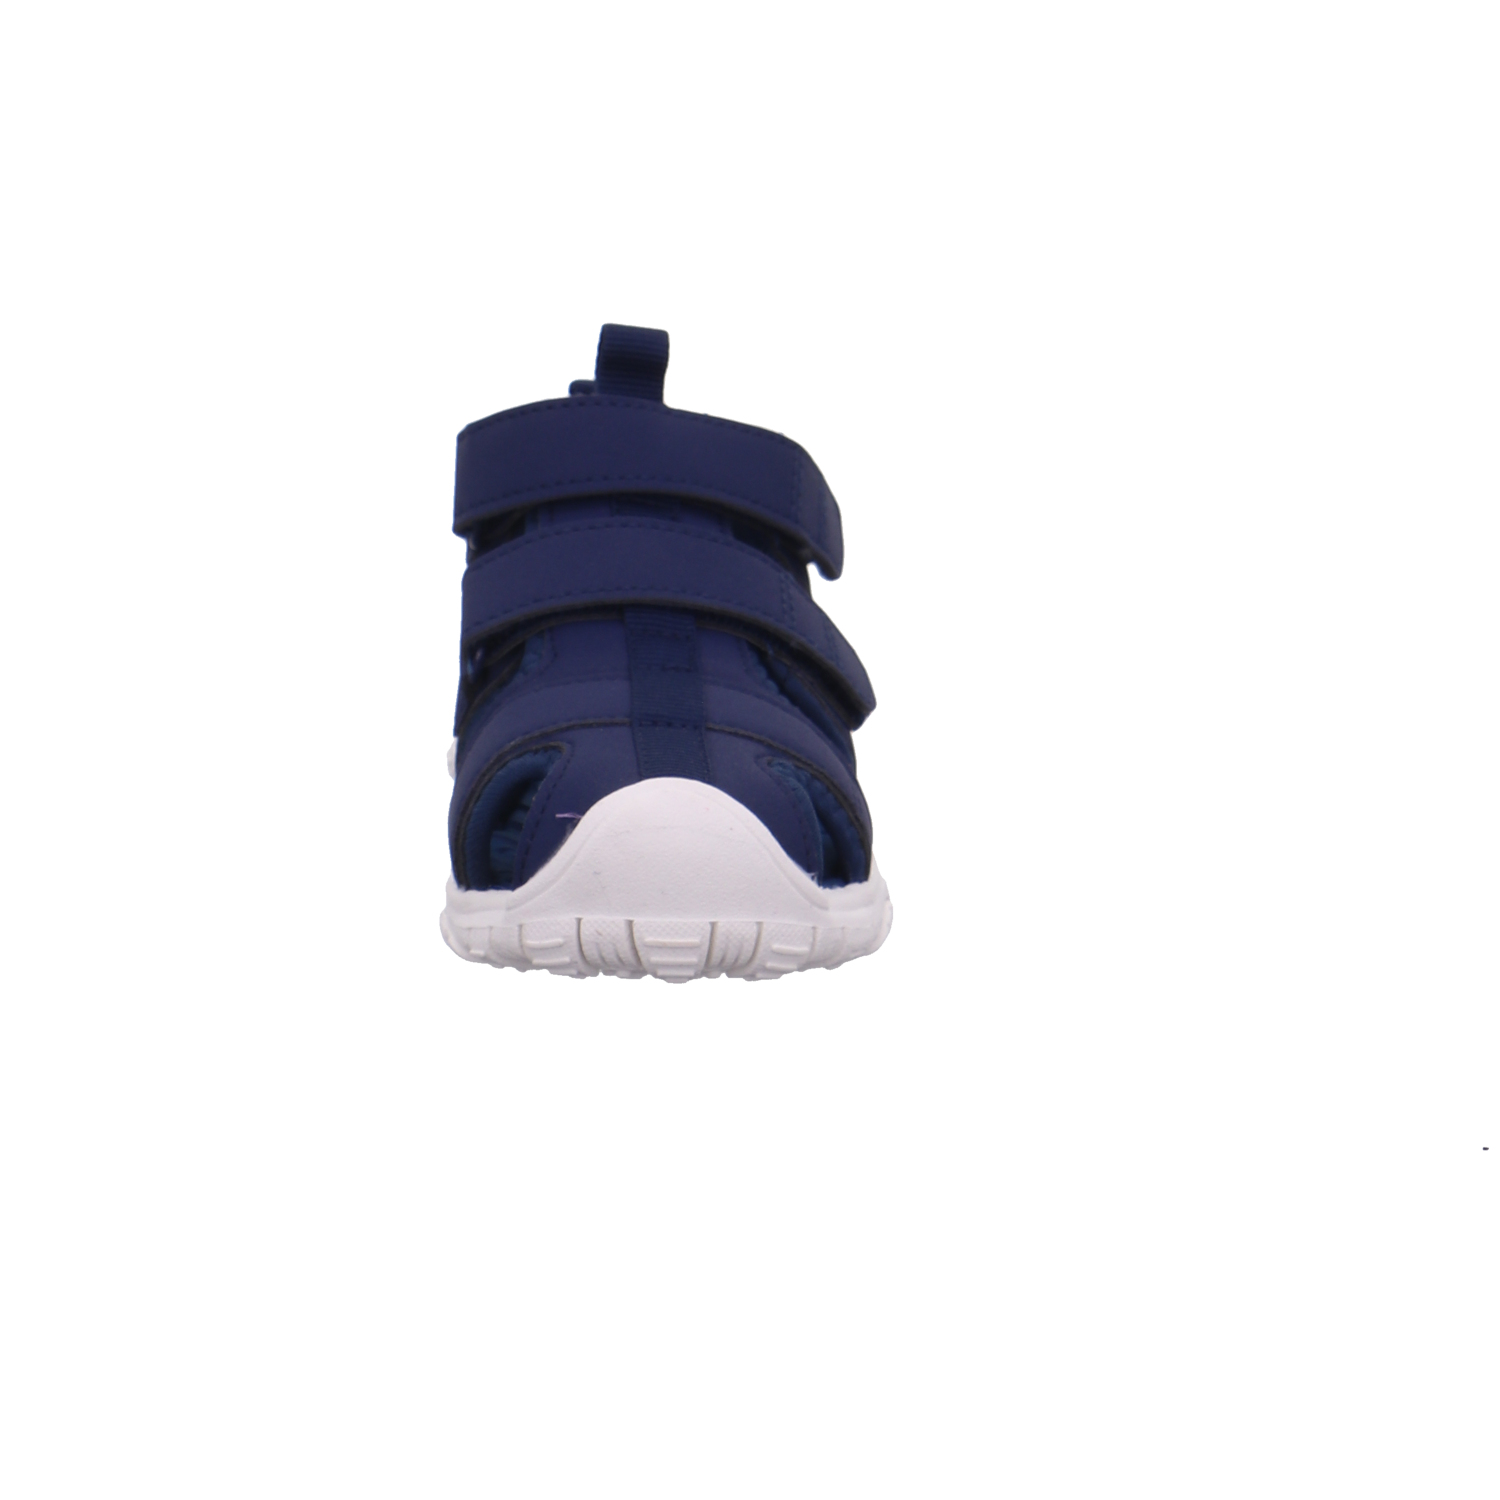 Hummel Offene Schuhe blau Bild3